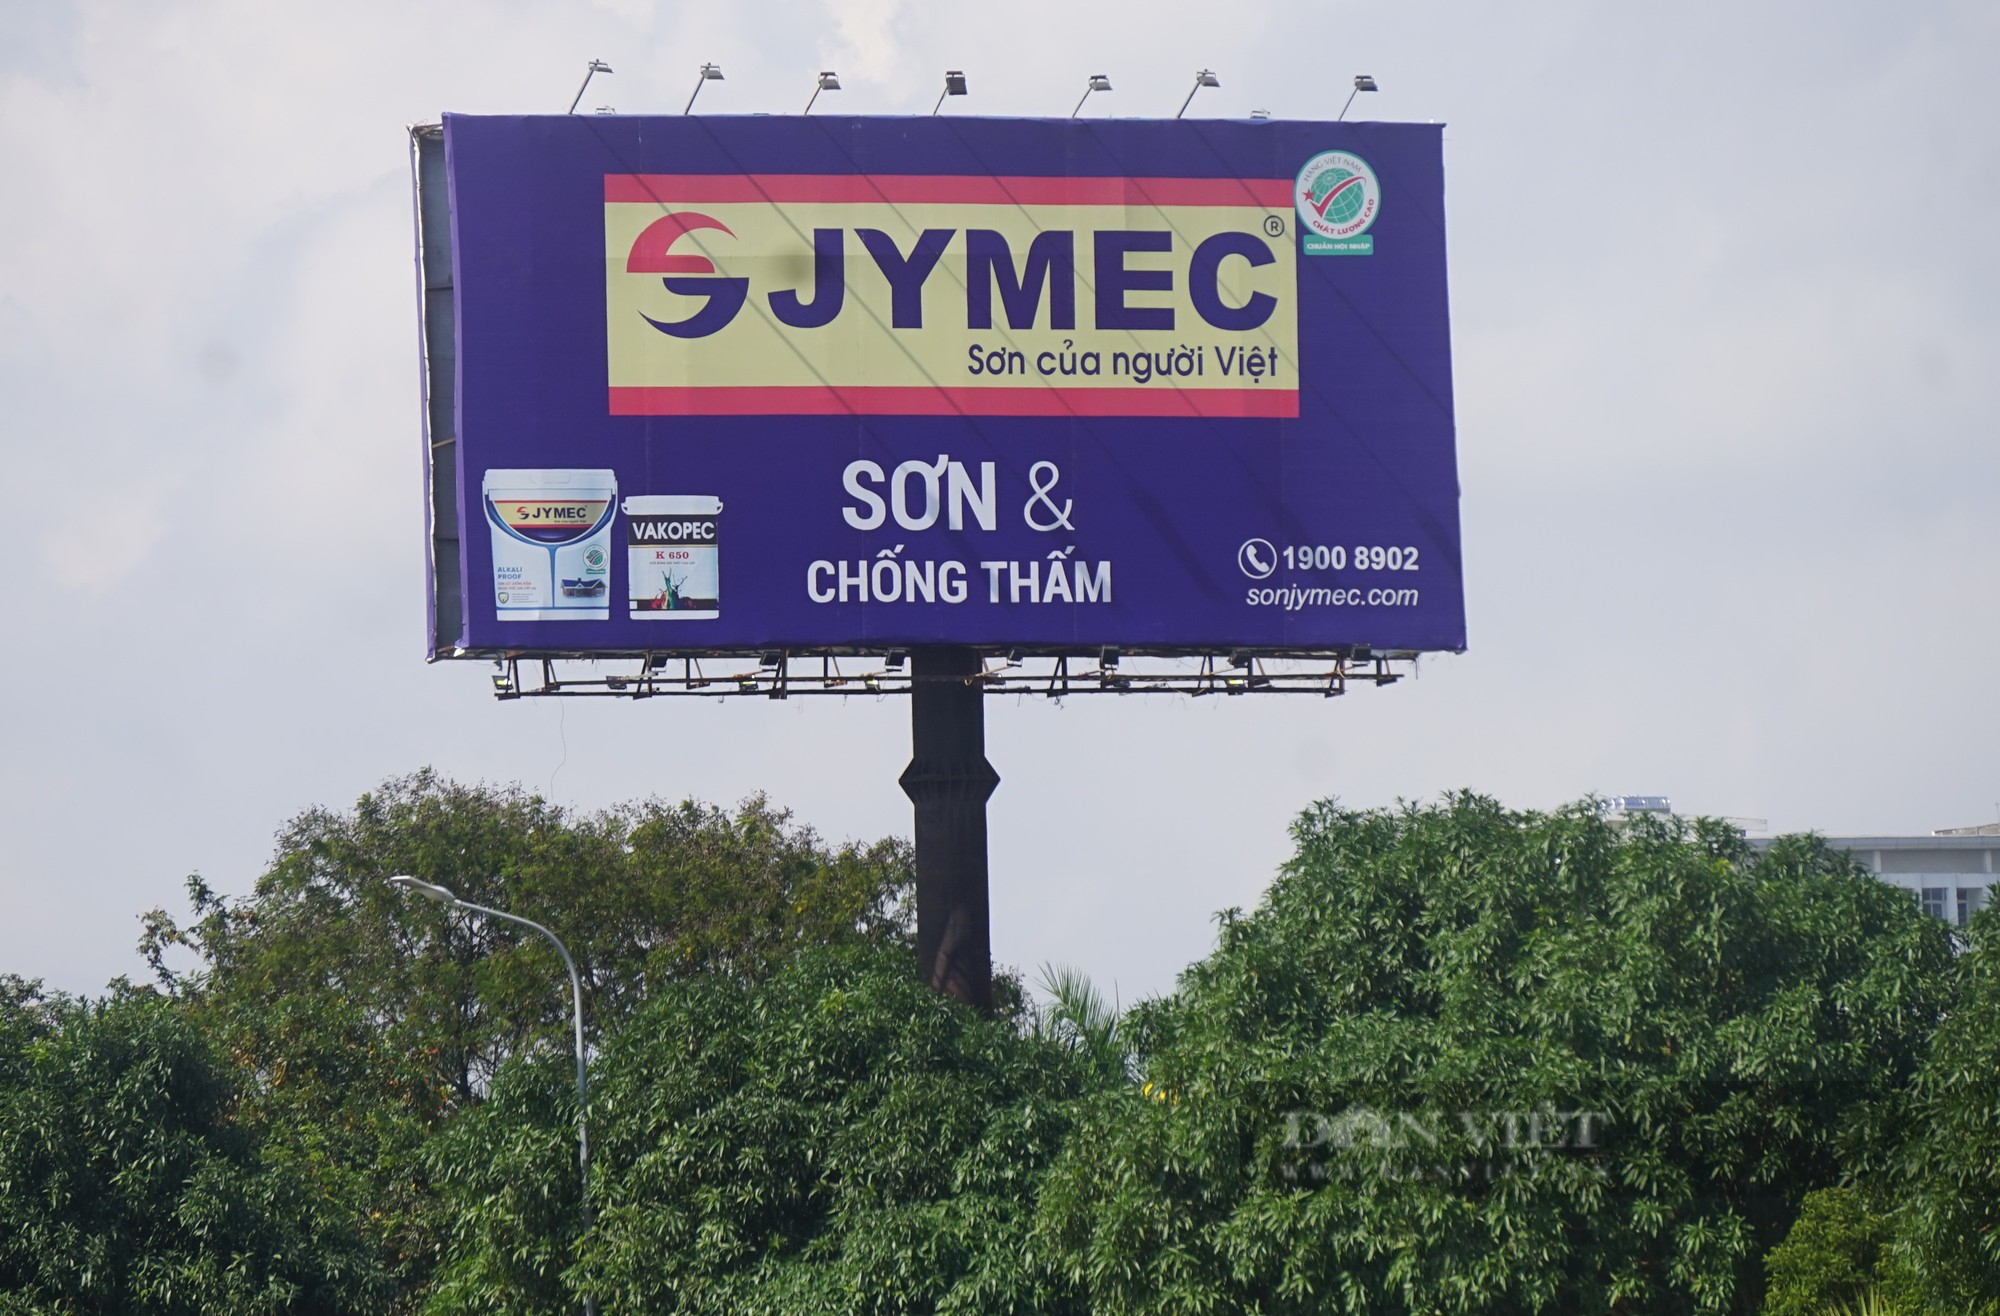 Bát nháo biển quảng cáo khủng ở thành phố Vinh, Nghệ An - Ảnh 16.